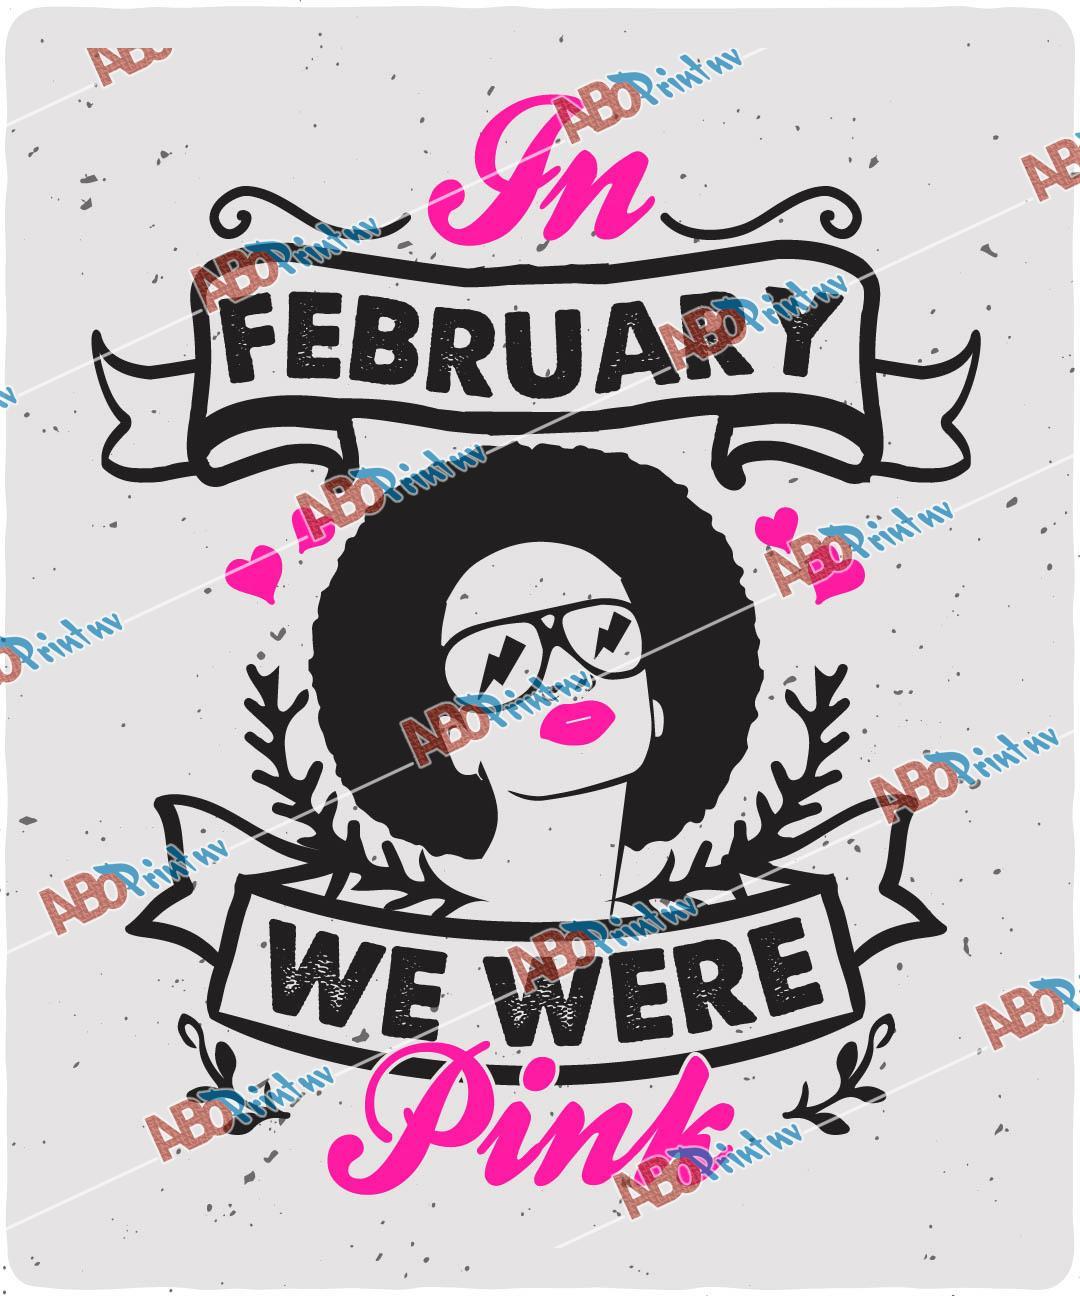 In February we were pink.jpg